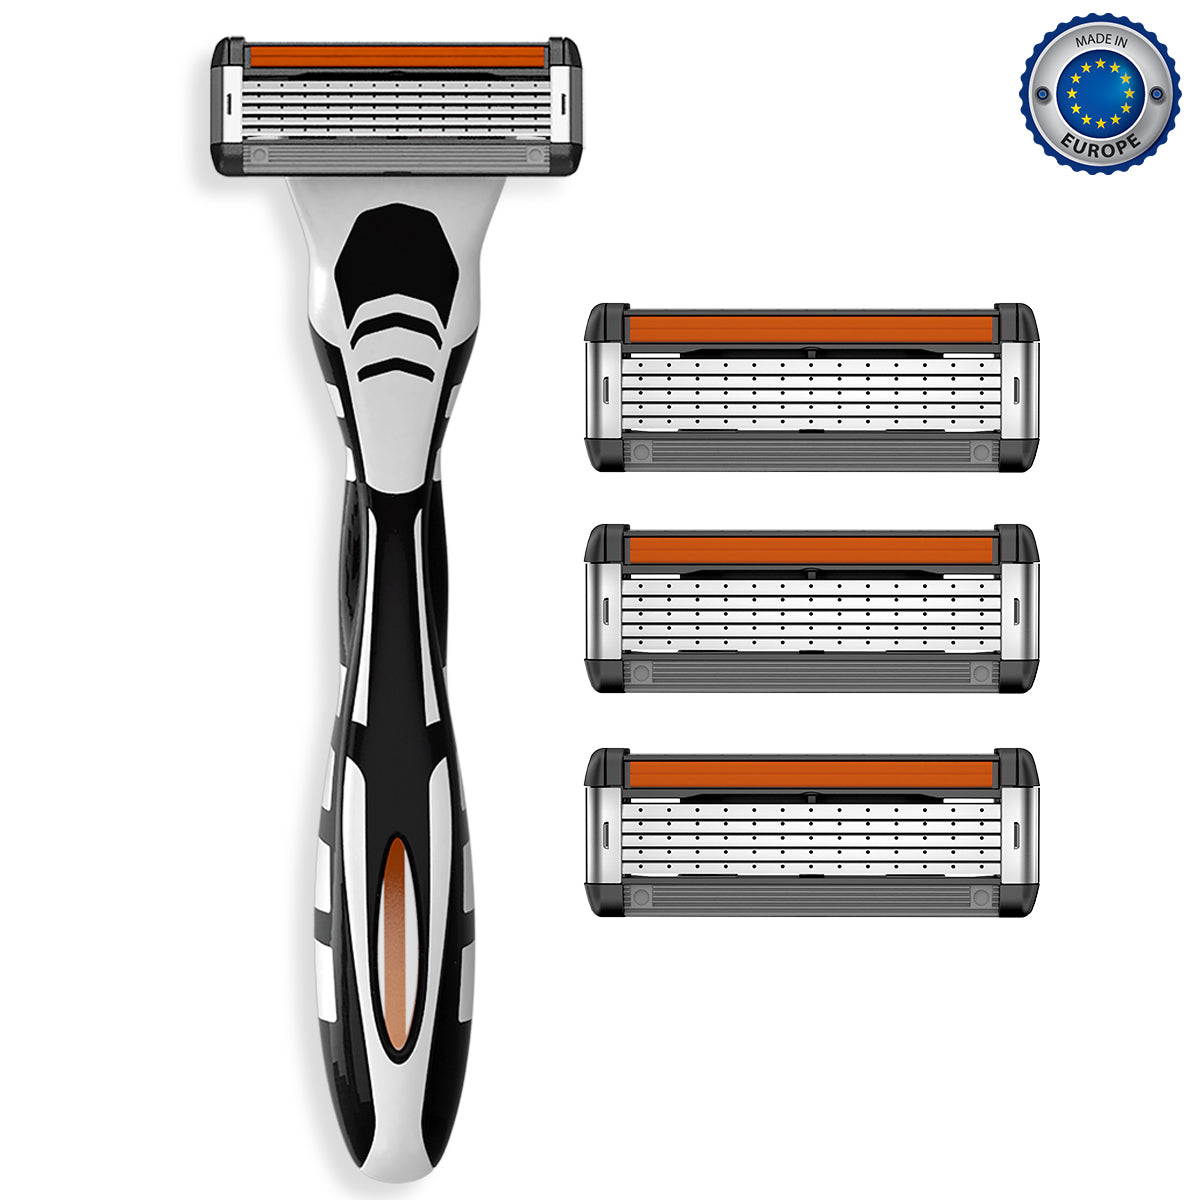 Zlade HyperGlide5 PRO Shaving System for Men - 1 Razor Handle + 4 Cartridges